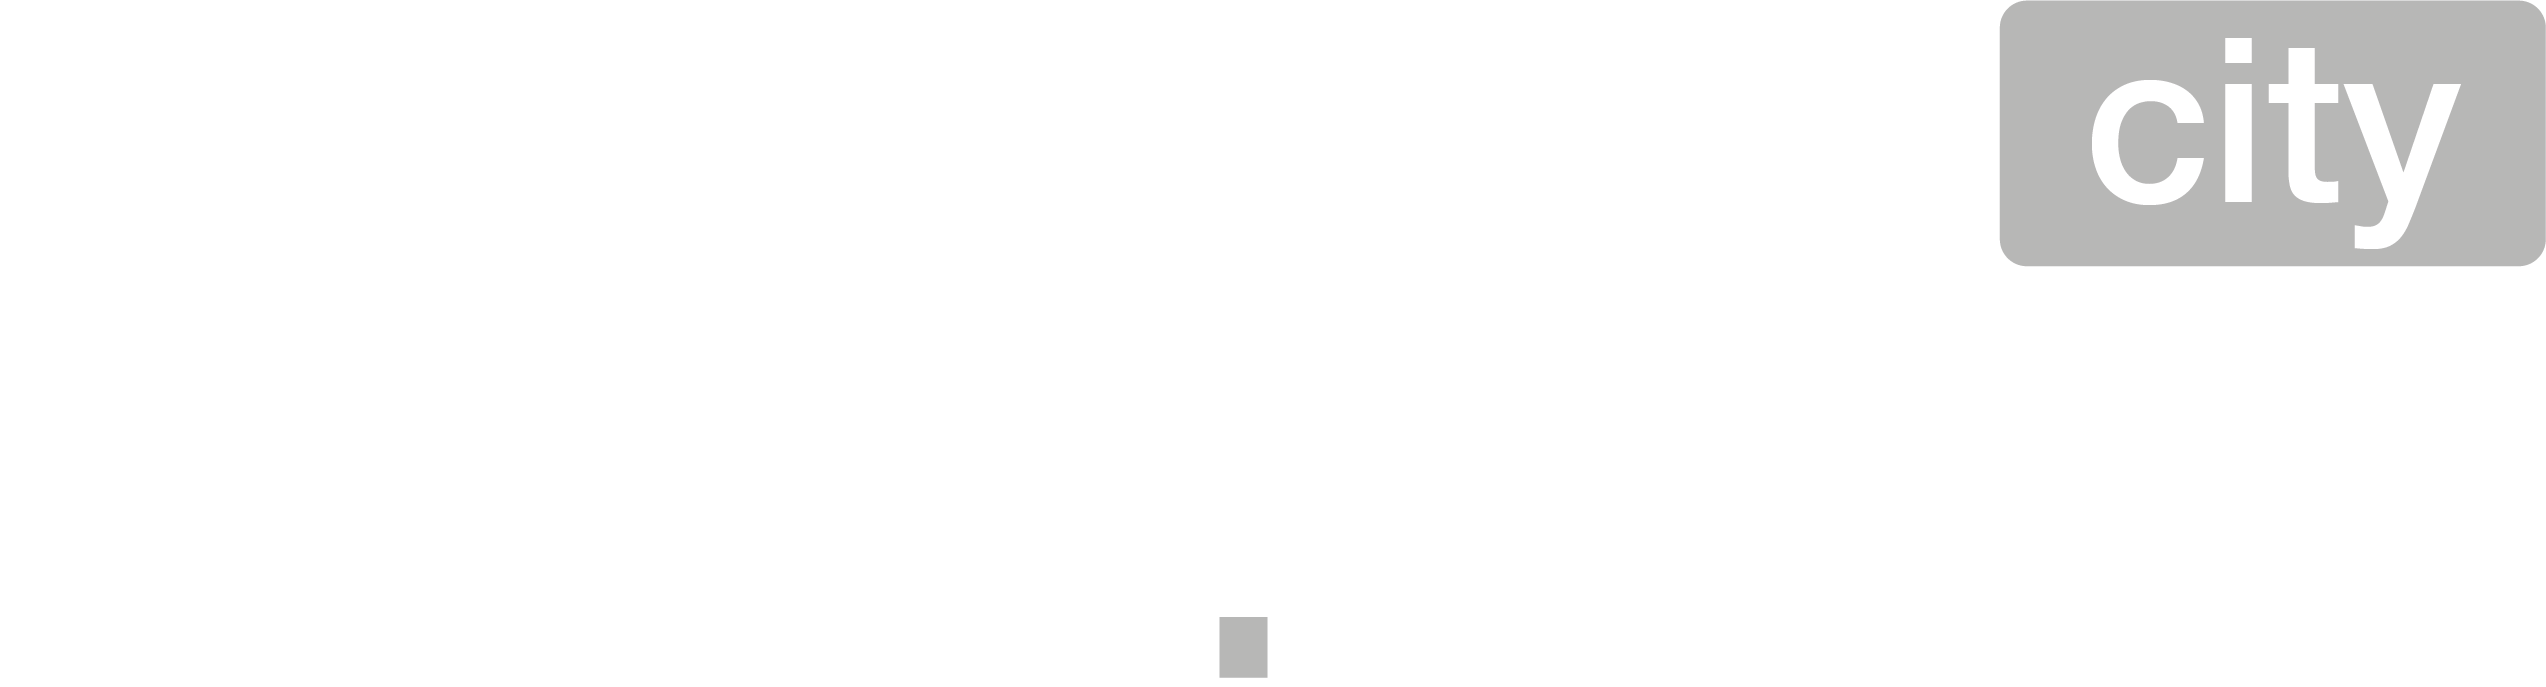 zahn-liebe-city-logo